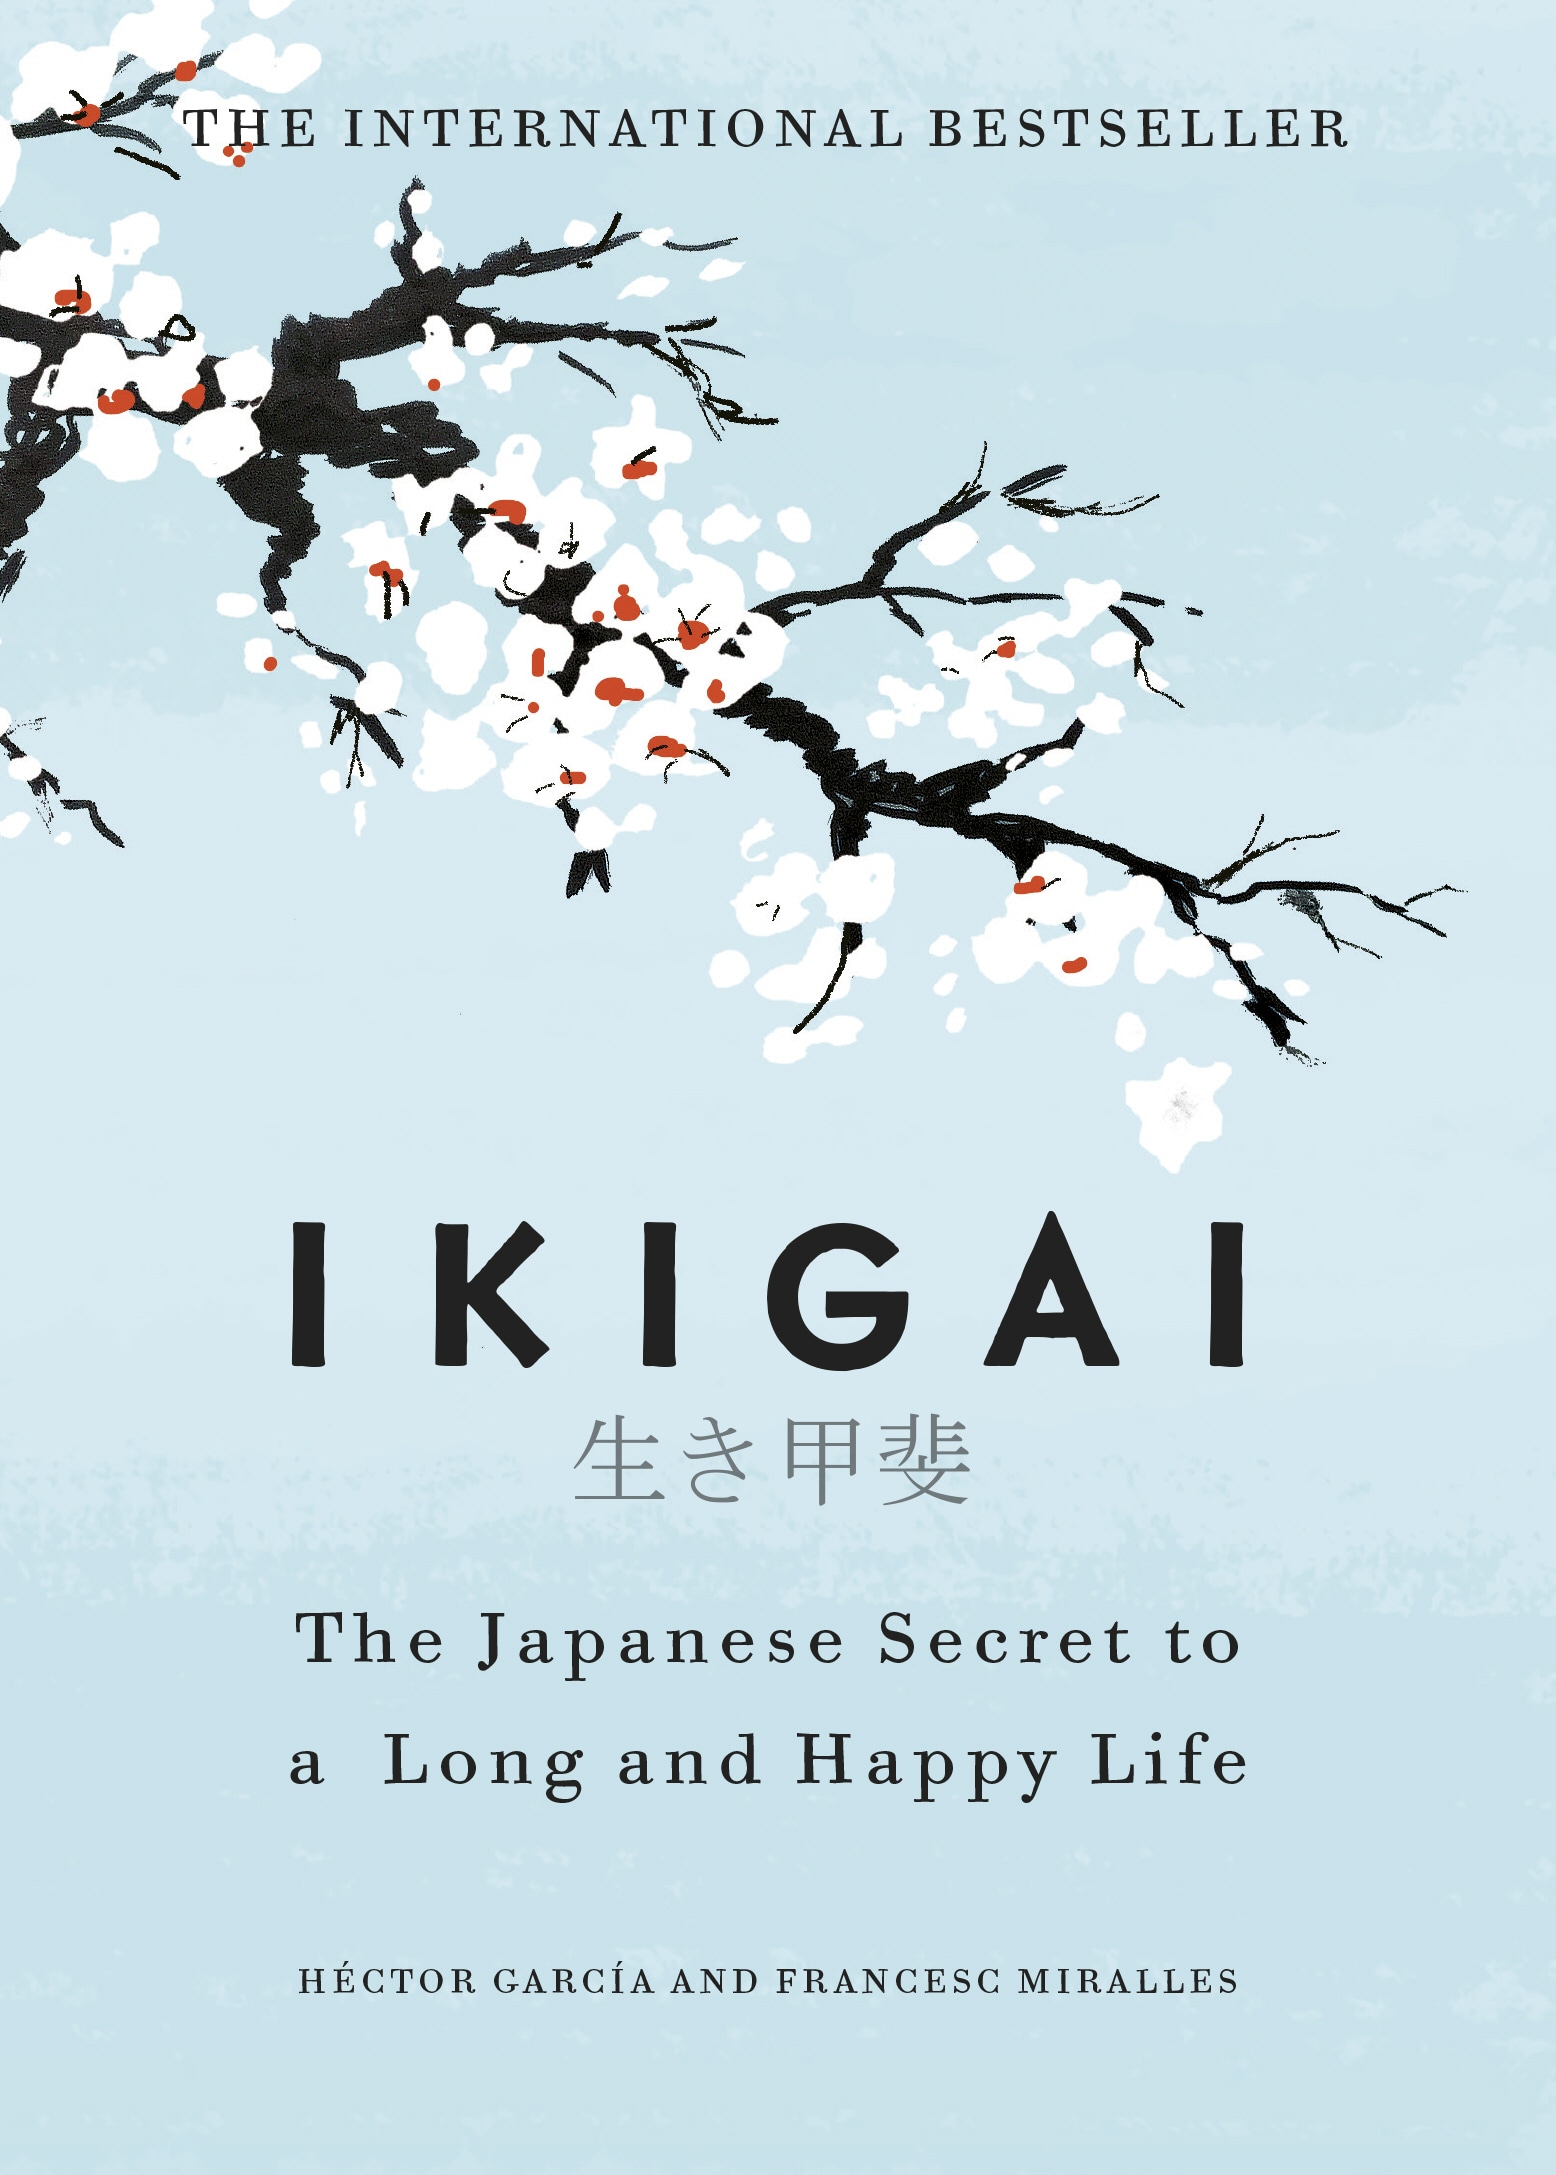 Book “Ikigai” by Héctor García, Francesc Miralles — September 7, 2017